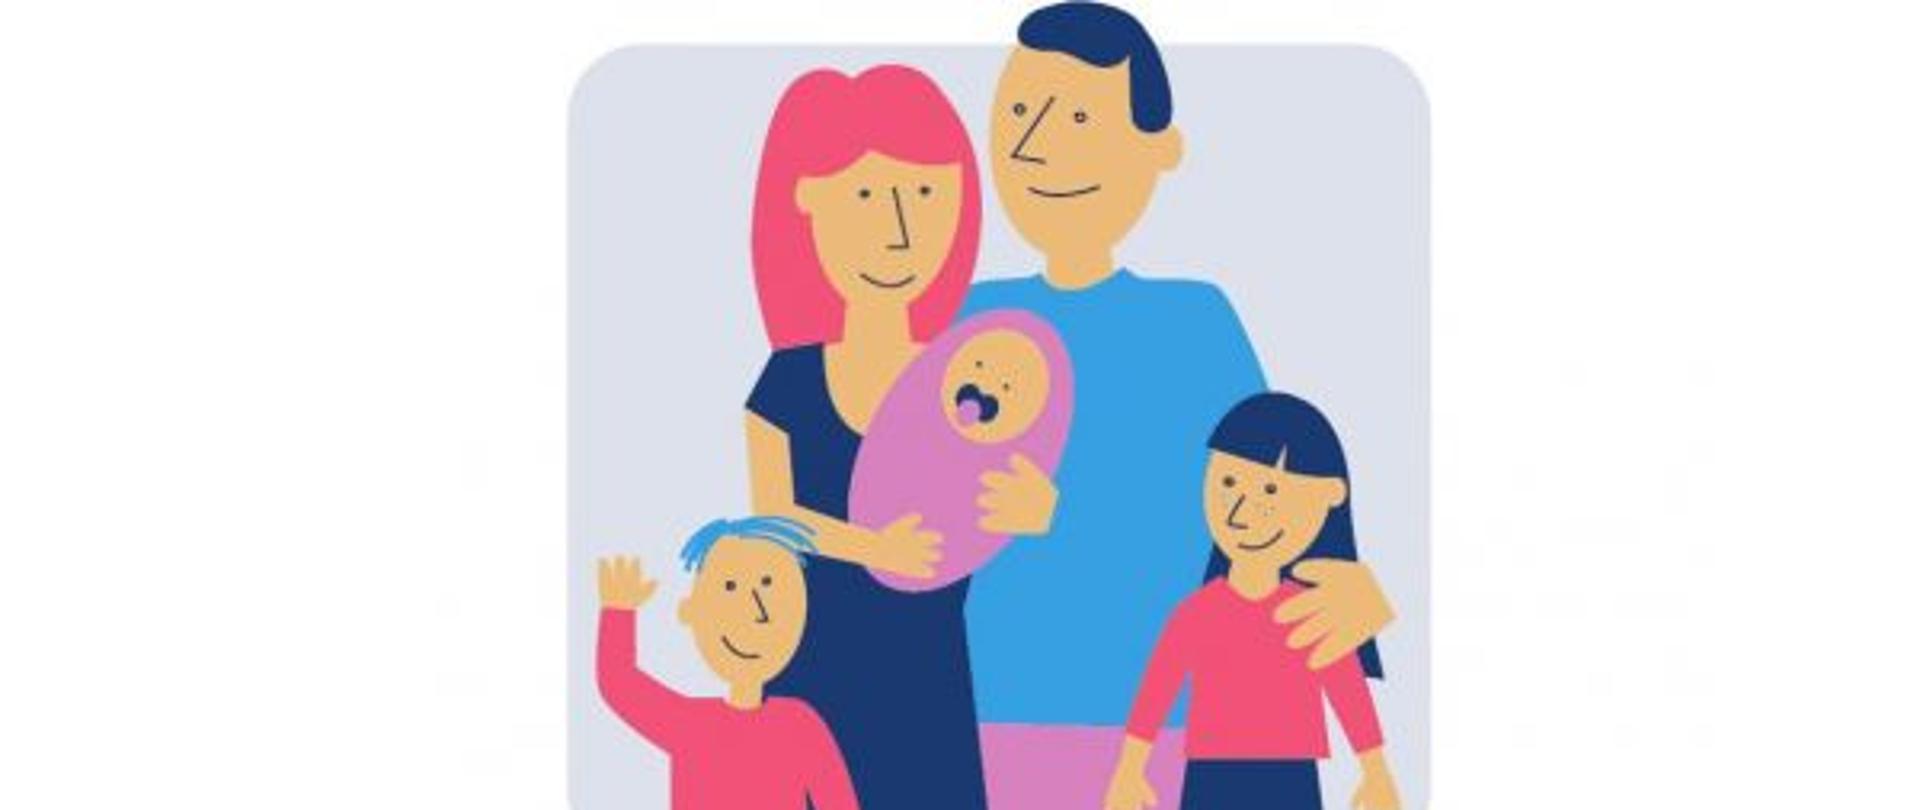 grafika rodziców z trójką dzieci, na dole napis: karta dużej rodziny, rodzina.gov.pl